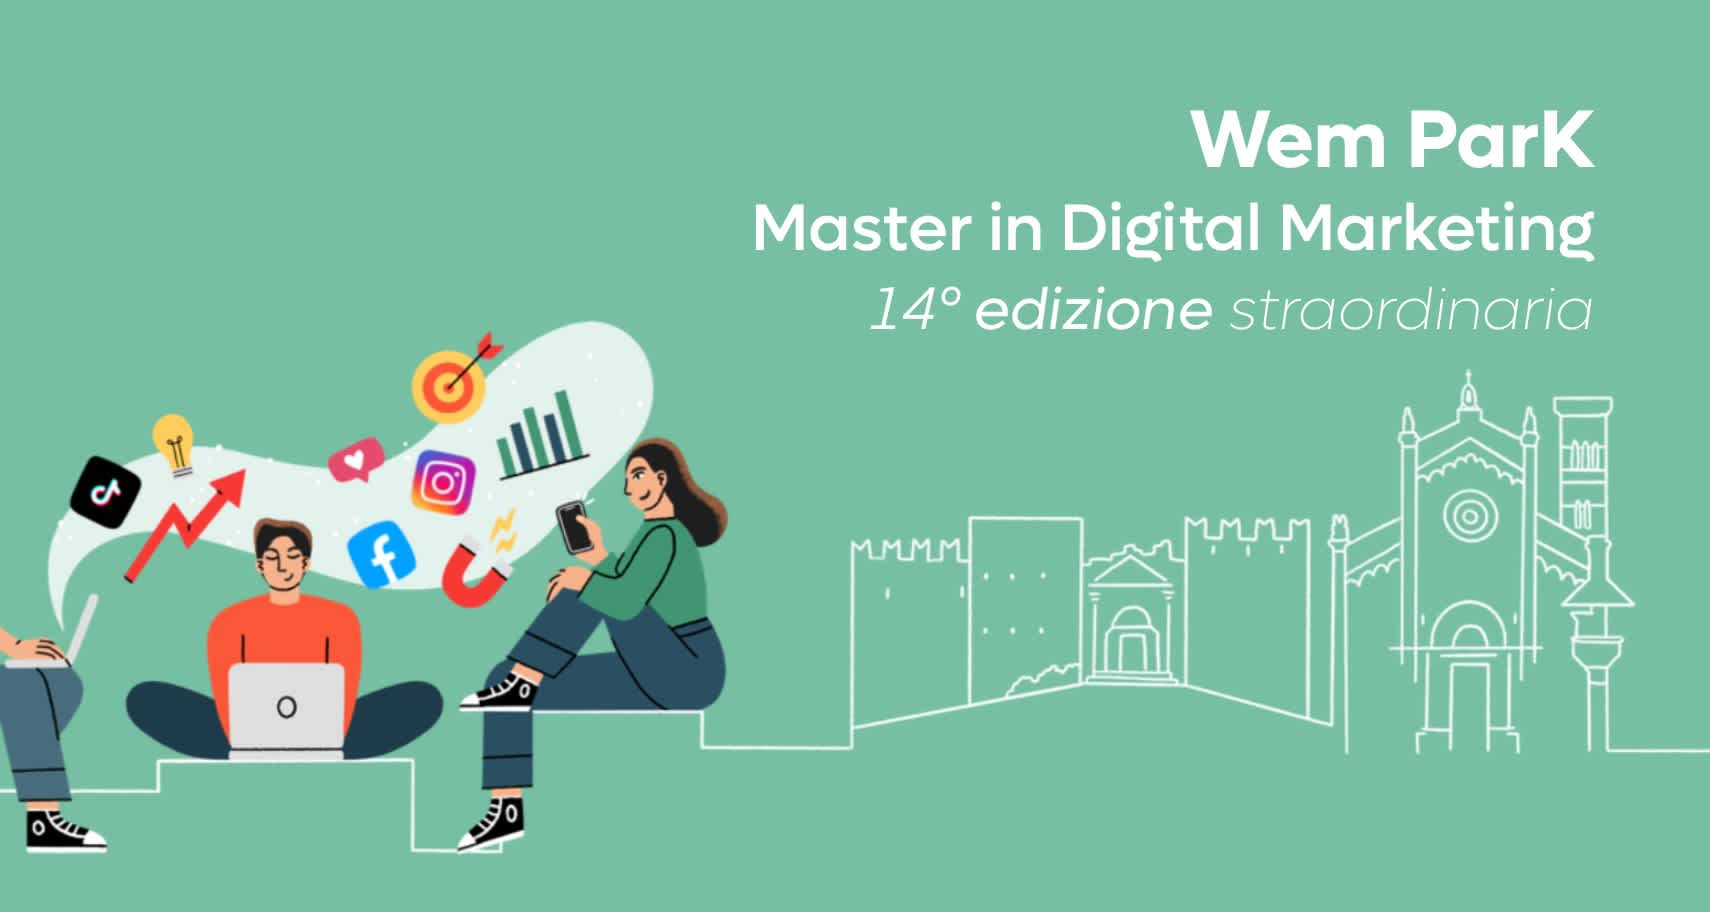 Master in Digital Marketing: la cultura digitale si diffonde da Prato  image